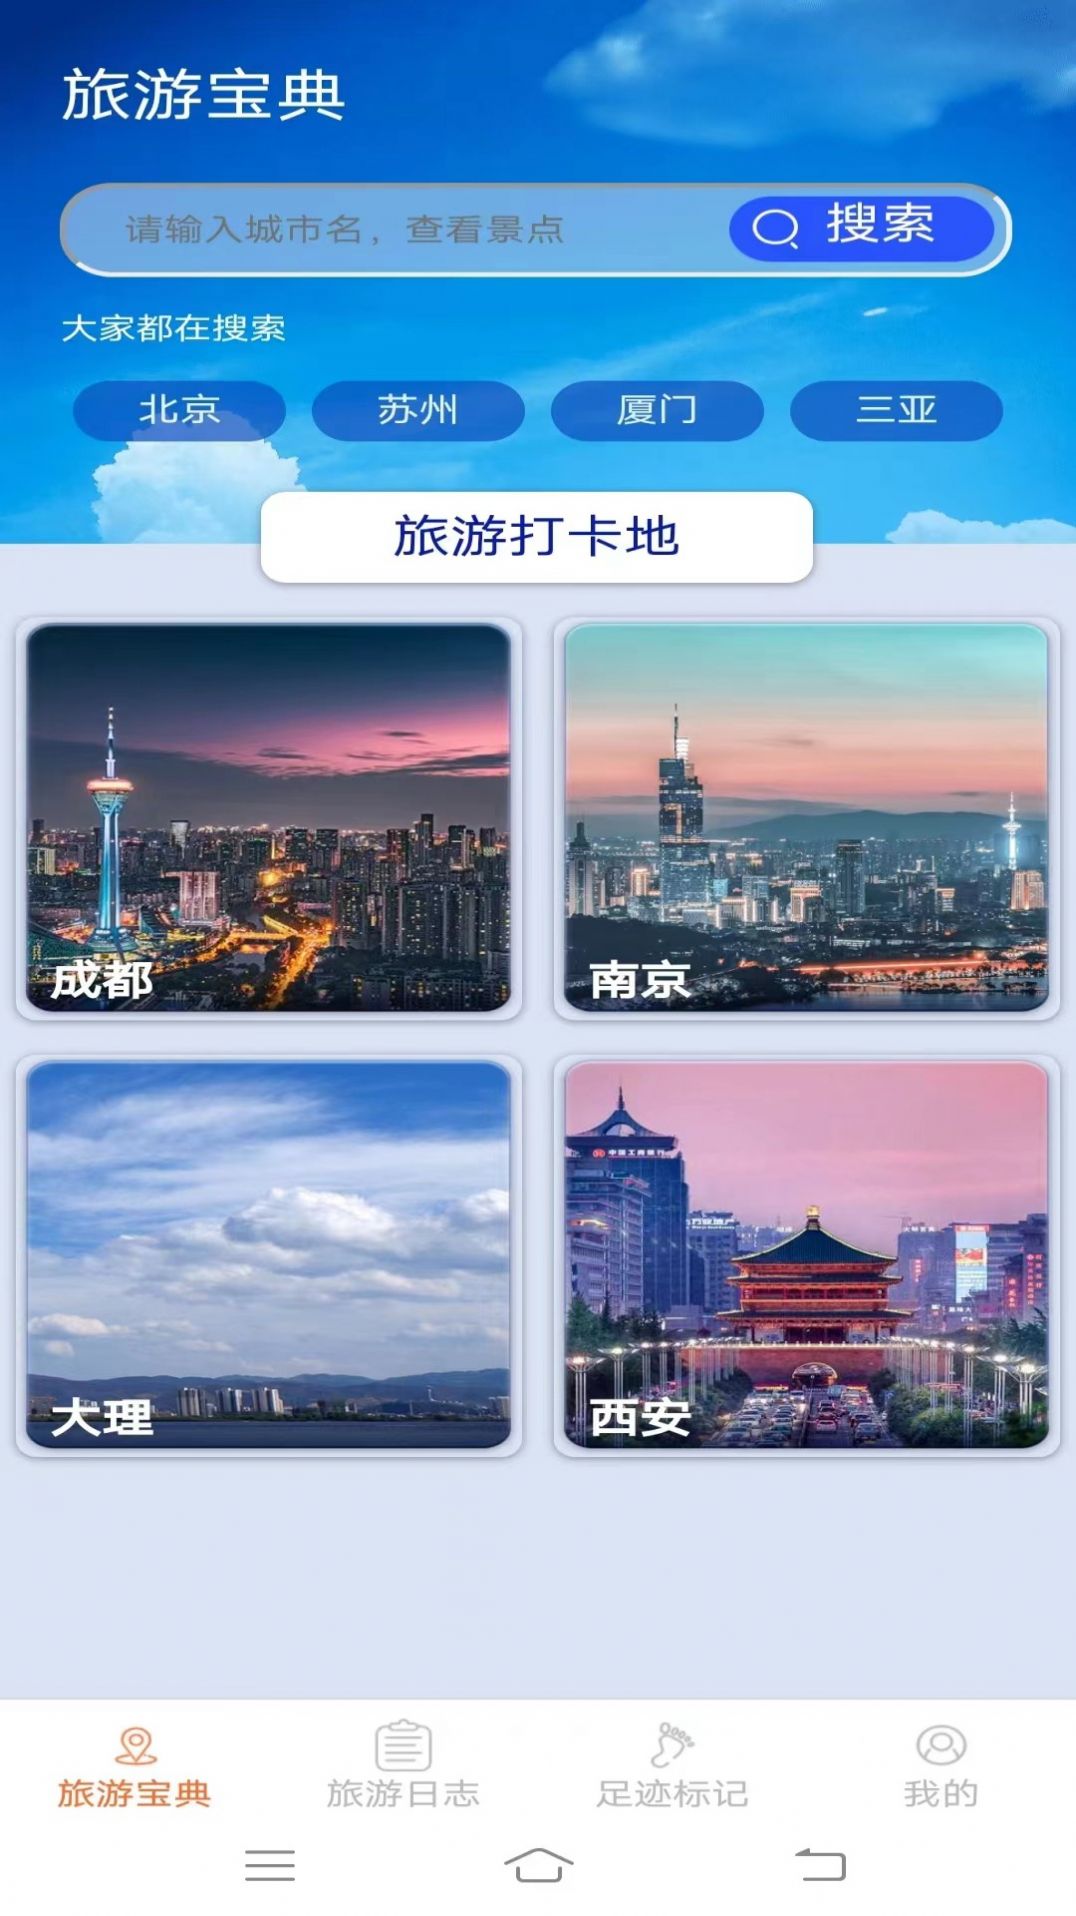 天天爱旅游app安卓版官方下载图片1